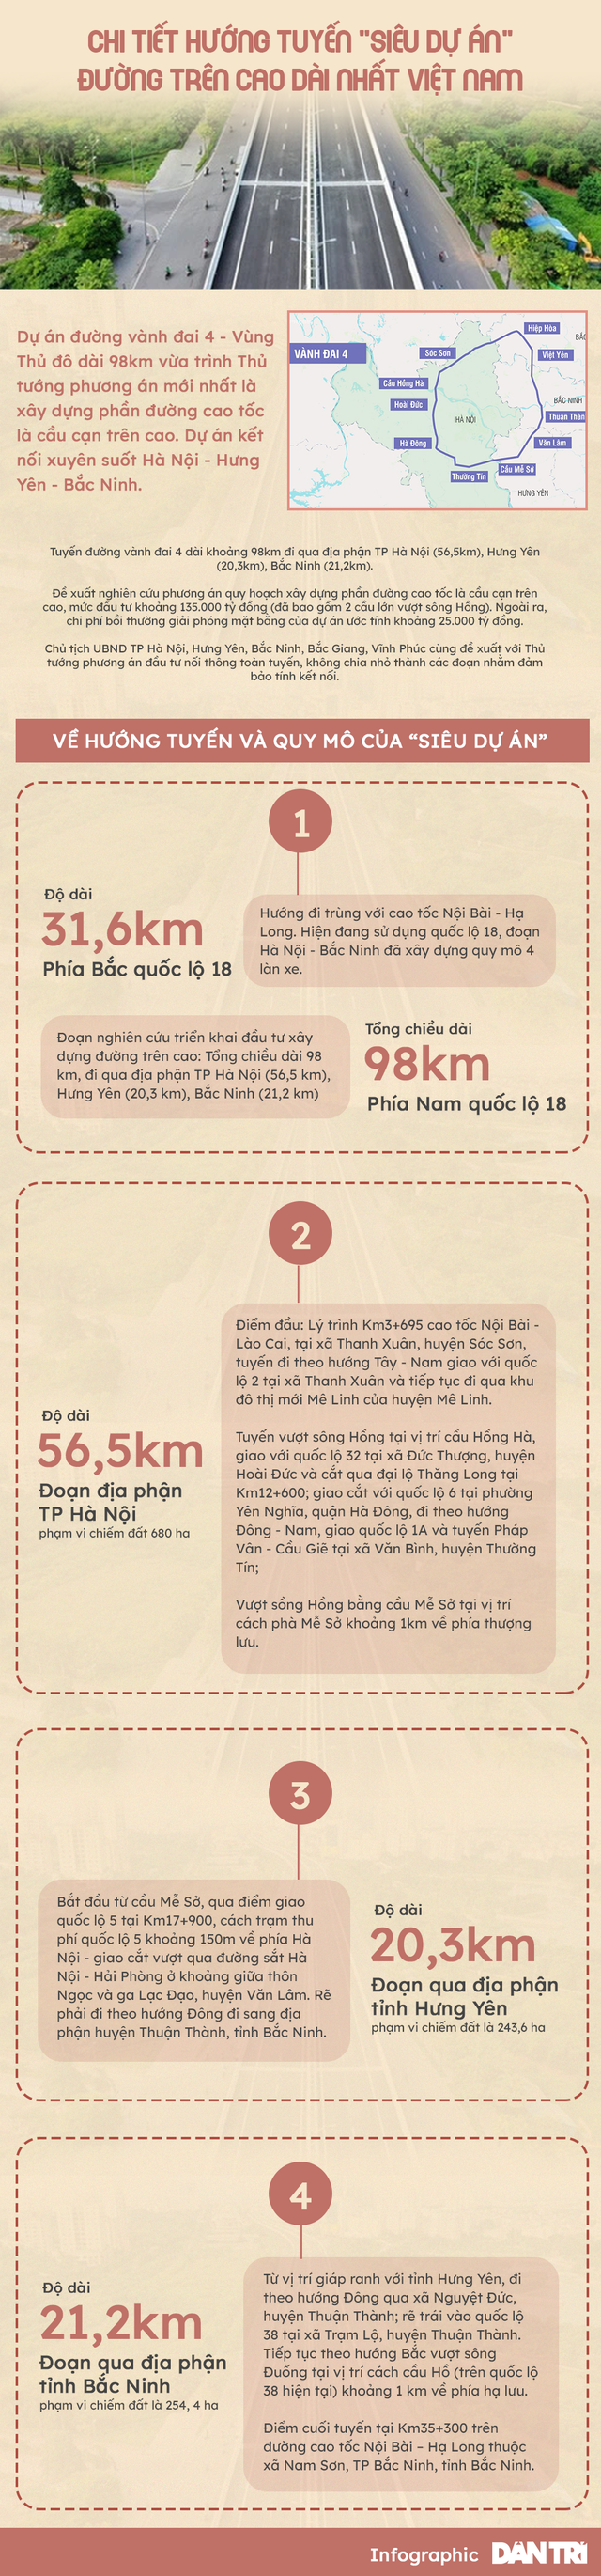 Lộ diện địa bàn siêu dự án đường trên cao dài nhất Việt Nam đi qua - 1